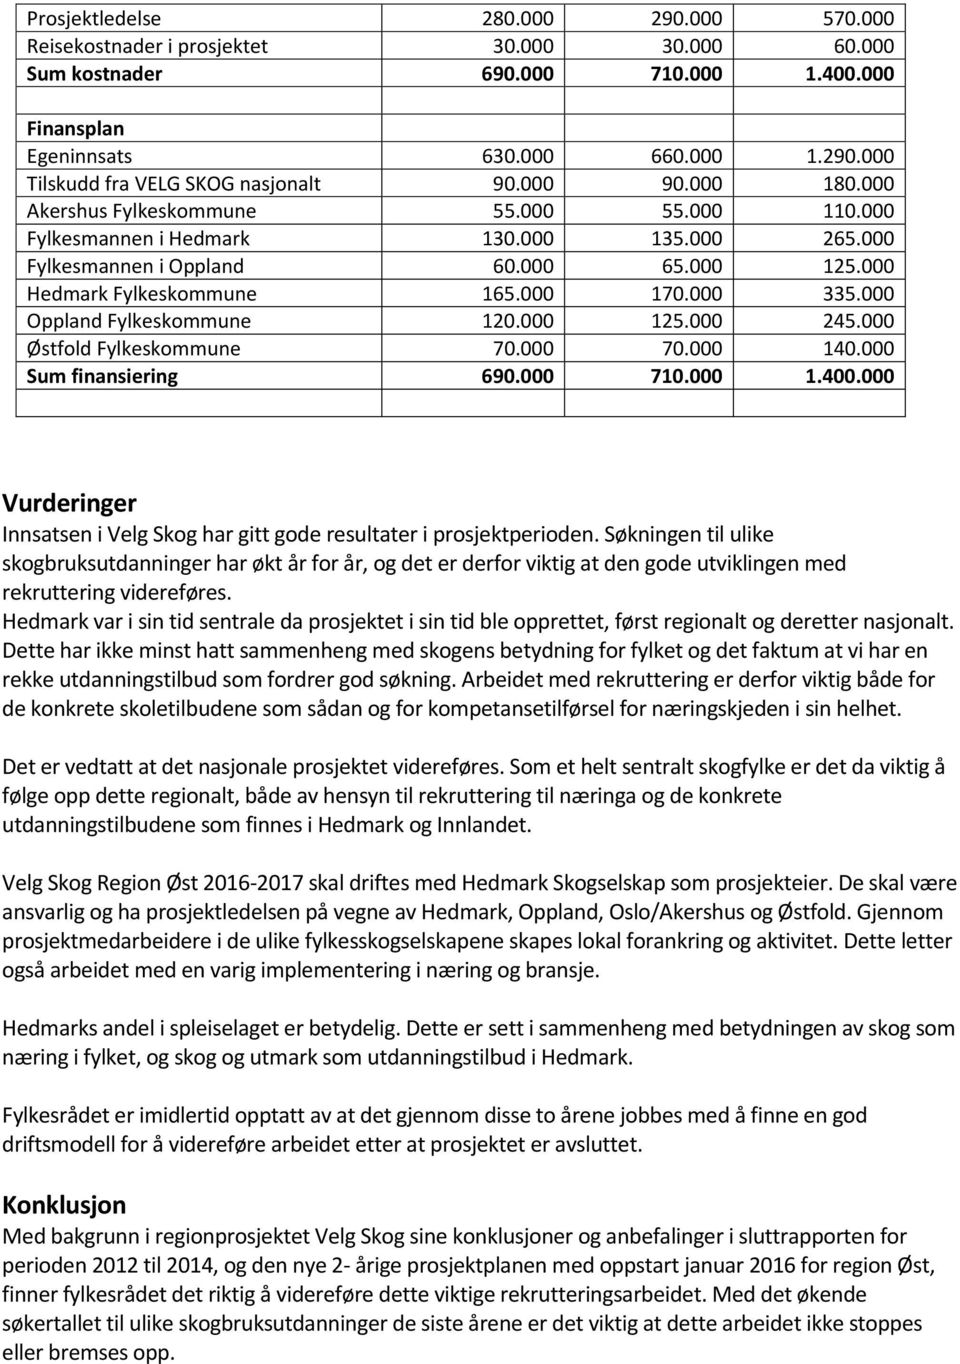 000 Oppland Fylkeskommune 120.000 125.000 245.000 Østfold Fylkeskommune 70.000 70.000 140.000 Sum finansiering 690.000 710.000 1.400.